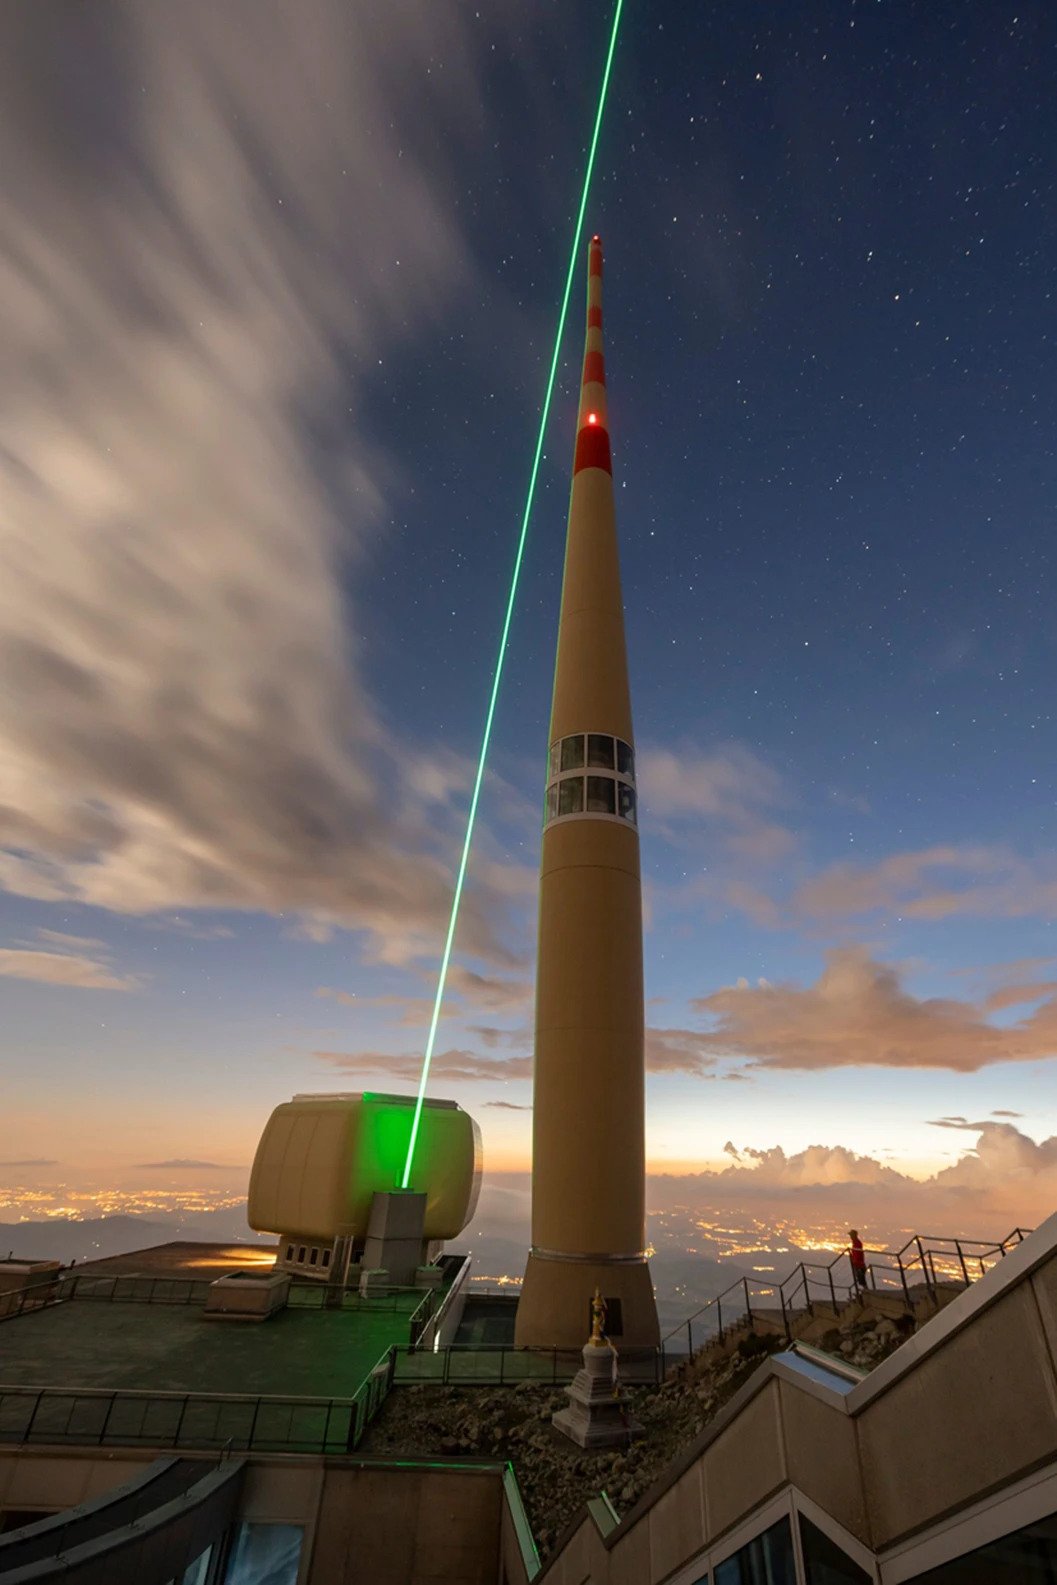 Pesando mais de 3 toneladas, o laser capaz de desviar raios foi instalado na montanha de Säntis, no nordeste da Suíça.